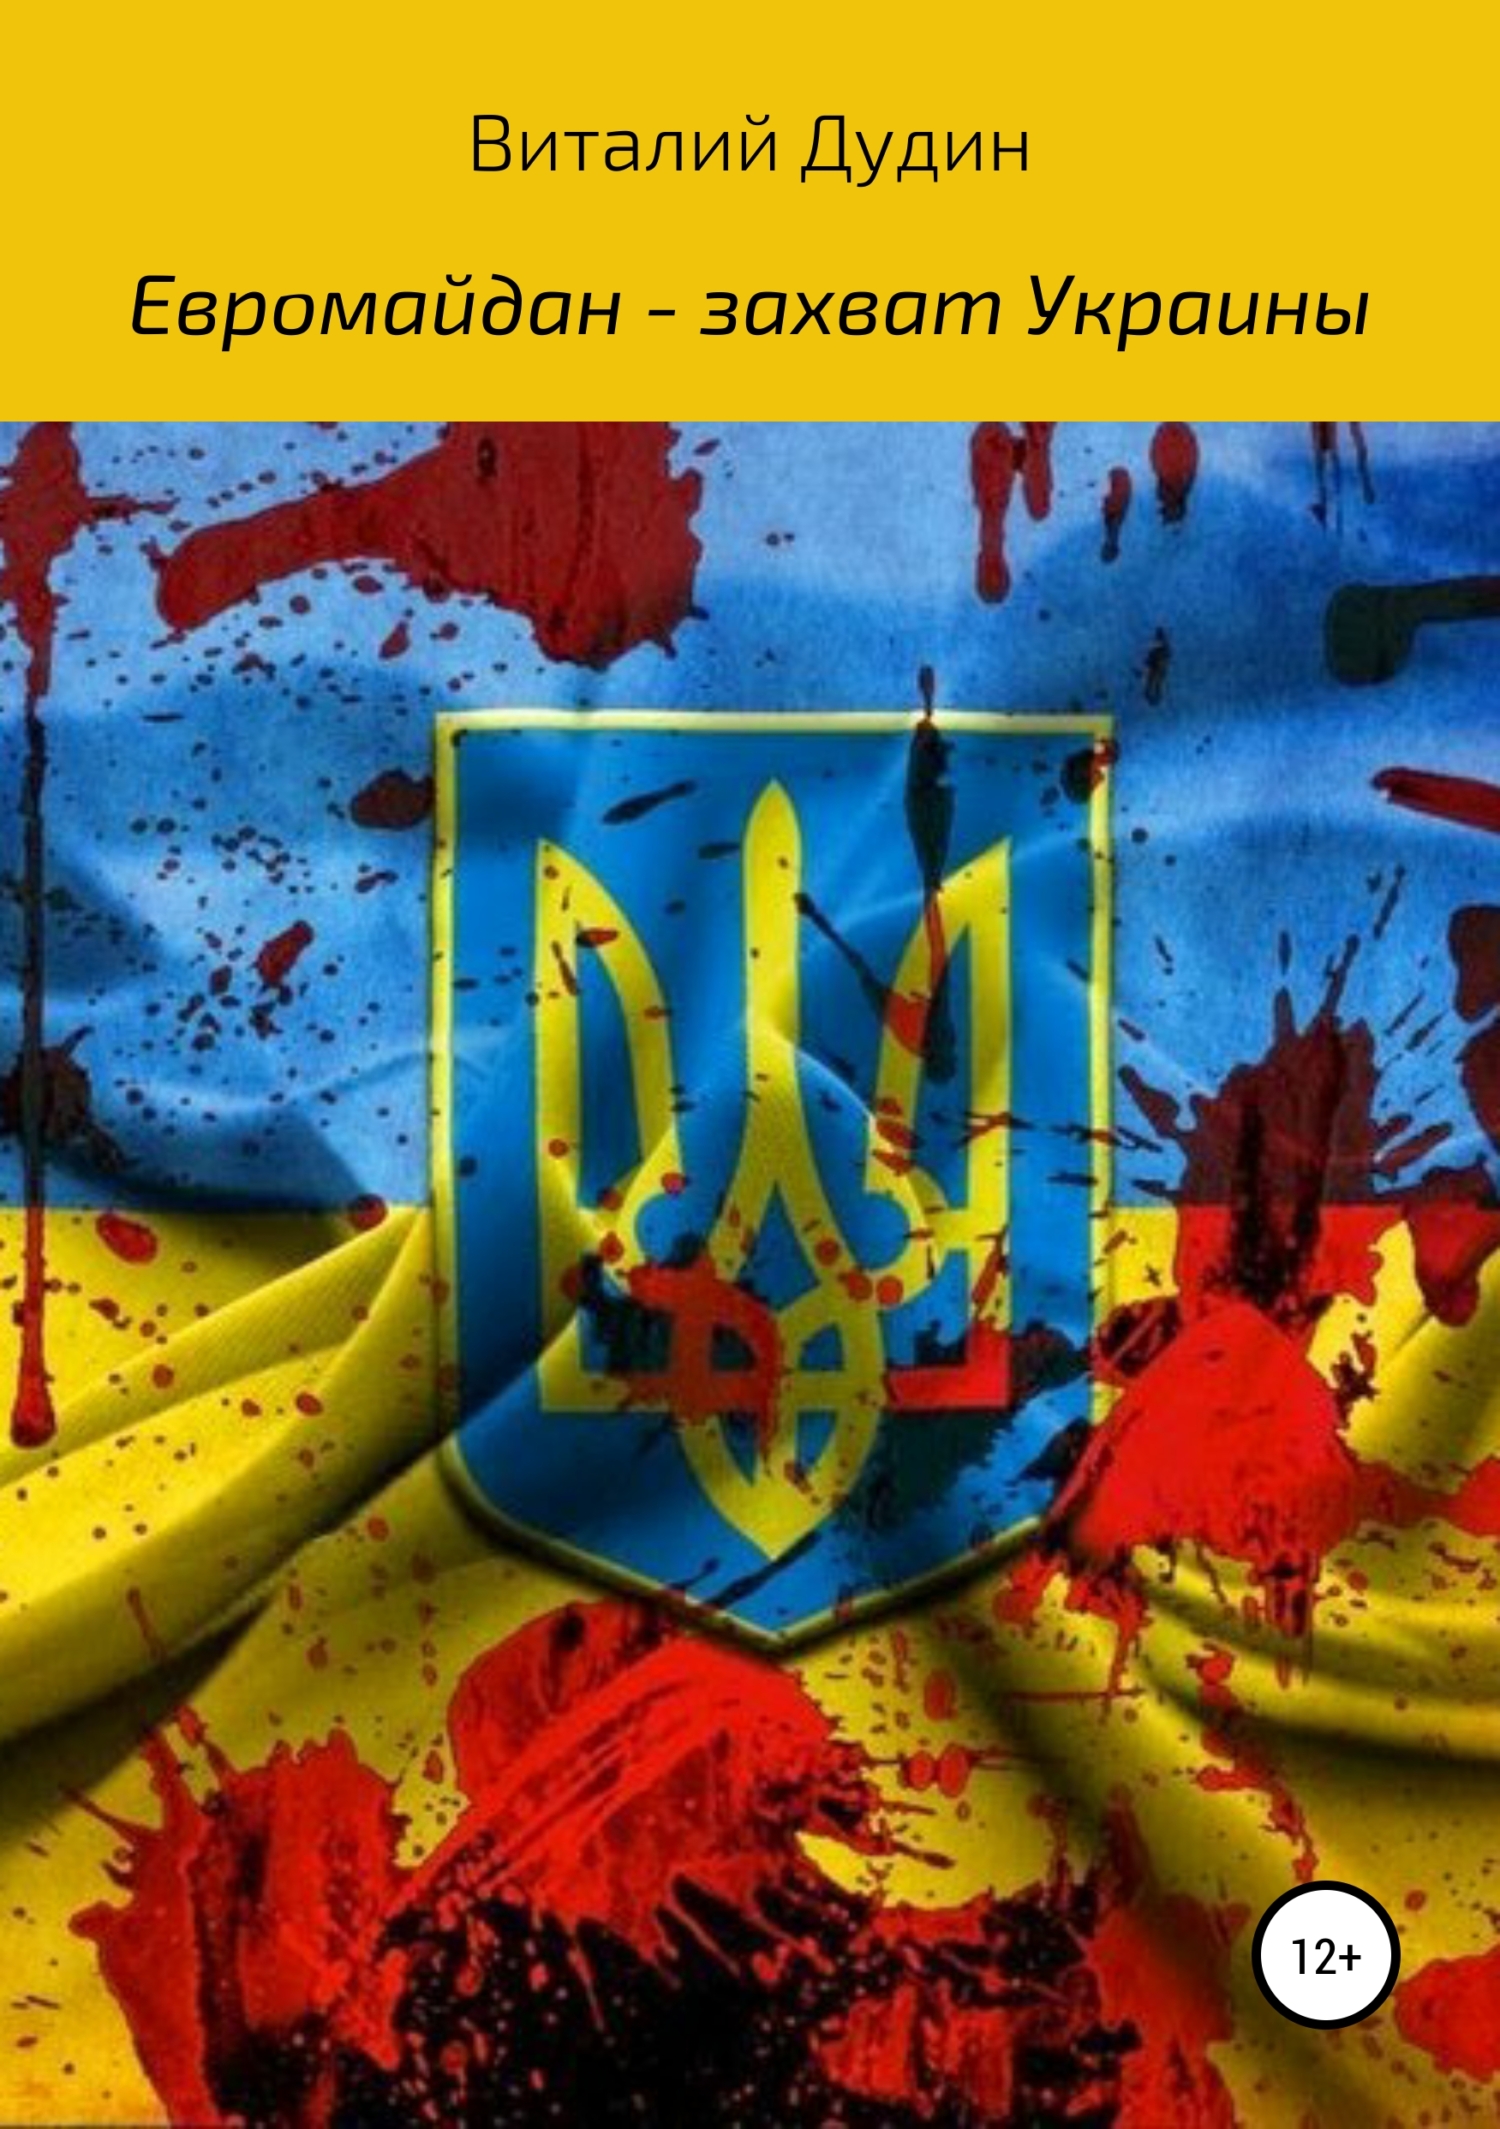 Книга Евромайдан – захват Украины из серии , созданная Виталий Дудин, может относится к жанру Публицистика: прочее. Стоимость электронной книги Евромайдан – захват Украины с идентификатором 41308350 составляет 149.00 руб.